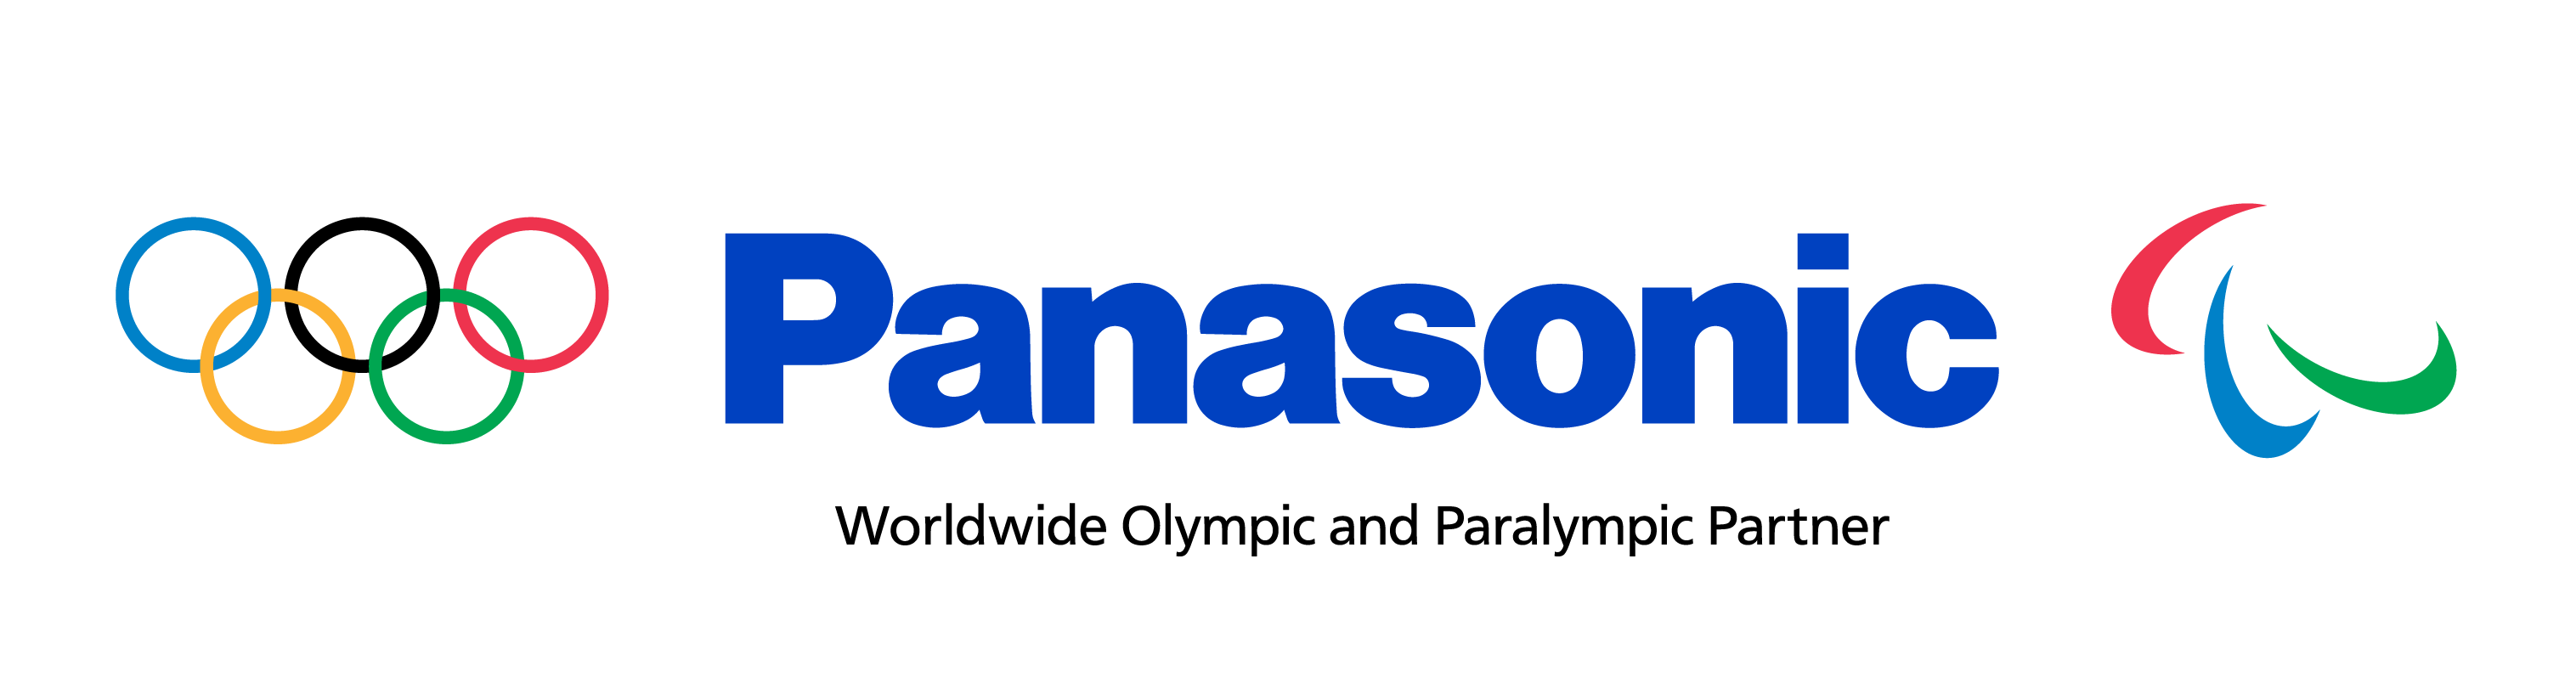 Image: Panasonic Worldwide Olympic and Paralympic Partner Logo